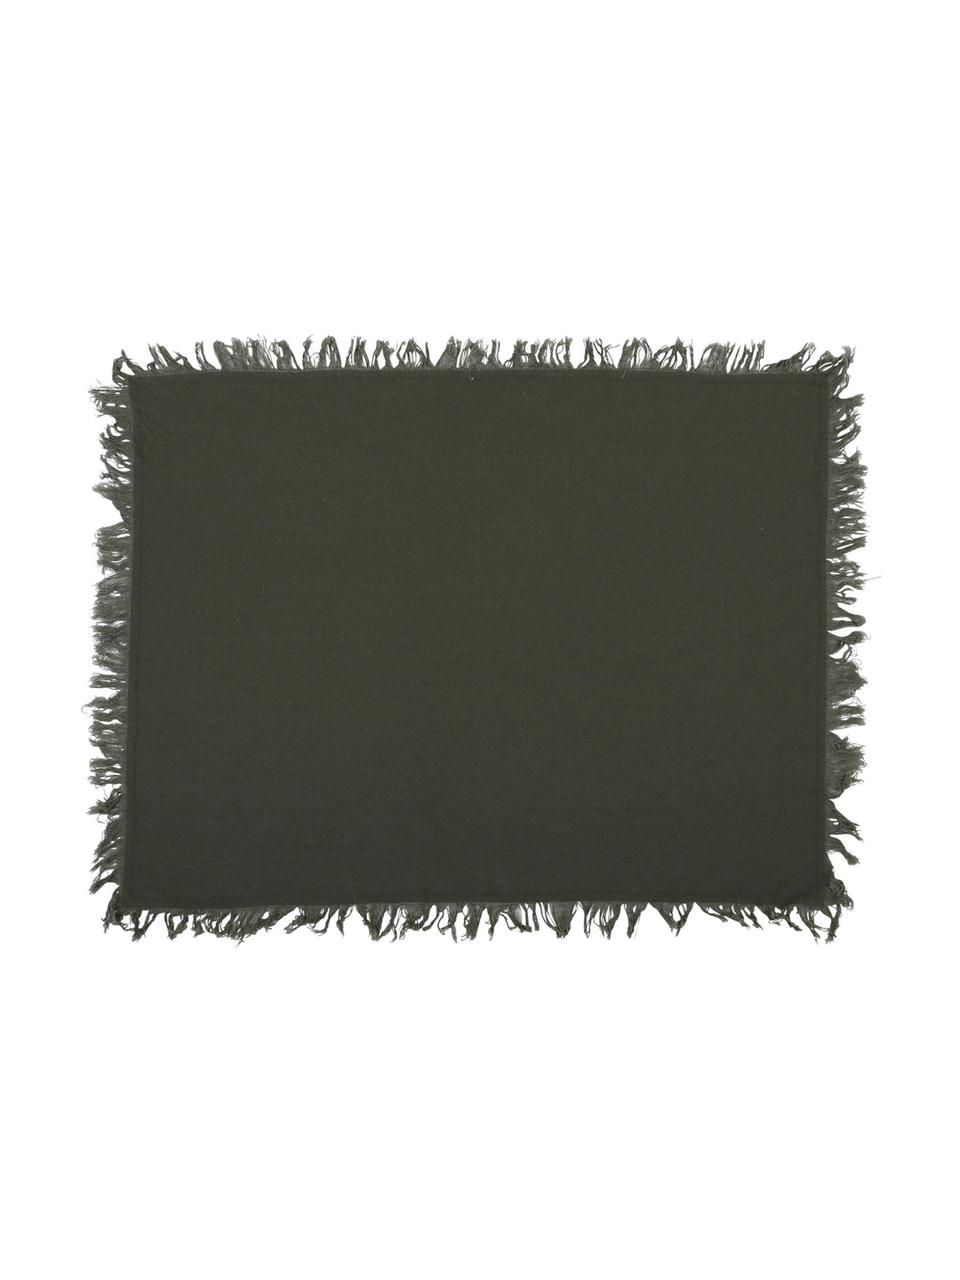 Podkładka z bawełny z frędzlami Nalia, 2 szt., Bawełna, Szary, S 50 x D 40 cm